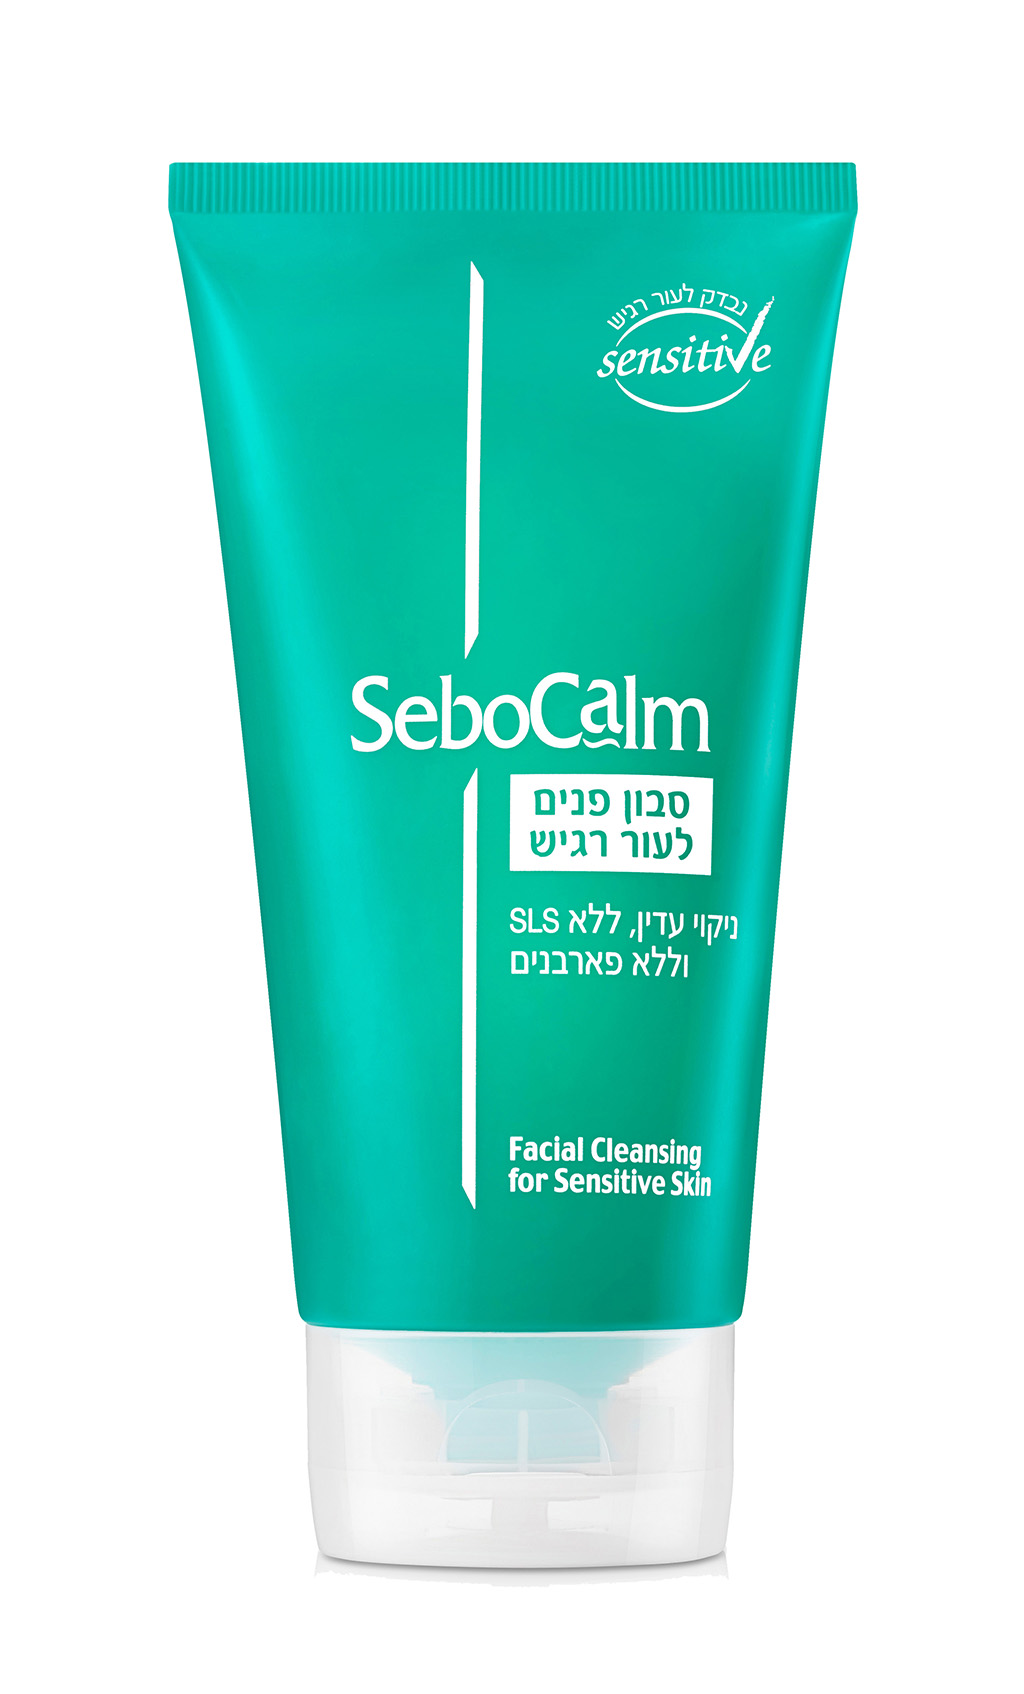 Новое мыло SeboCalm для супер-чувствительной кожи